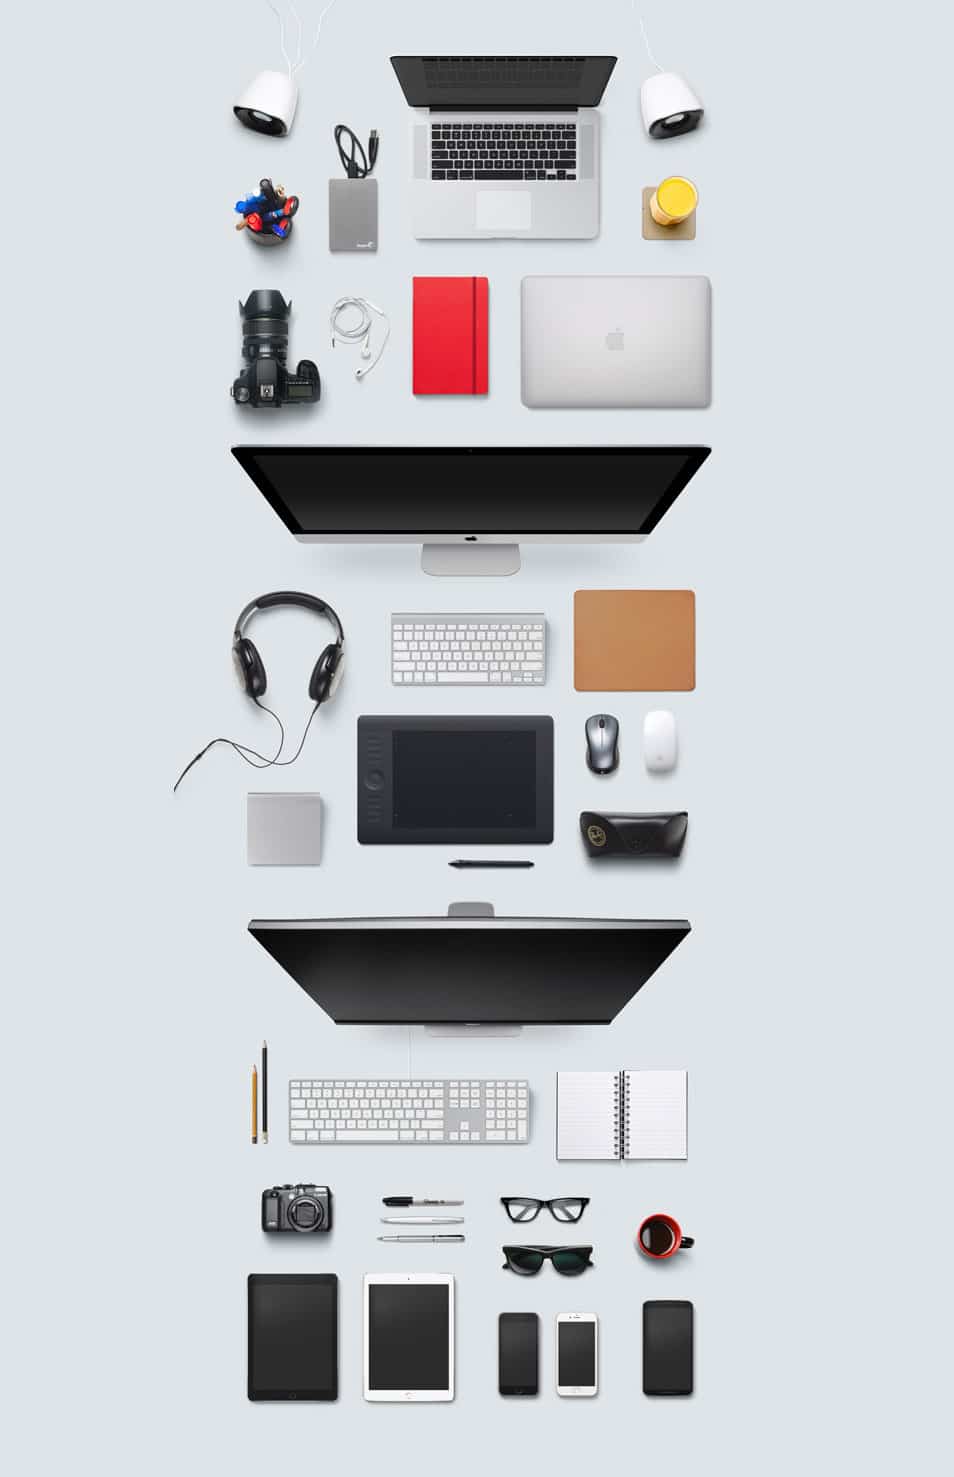 Designer Desk Essentials